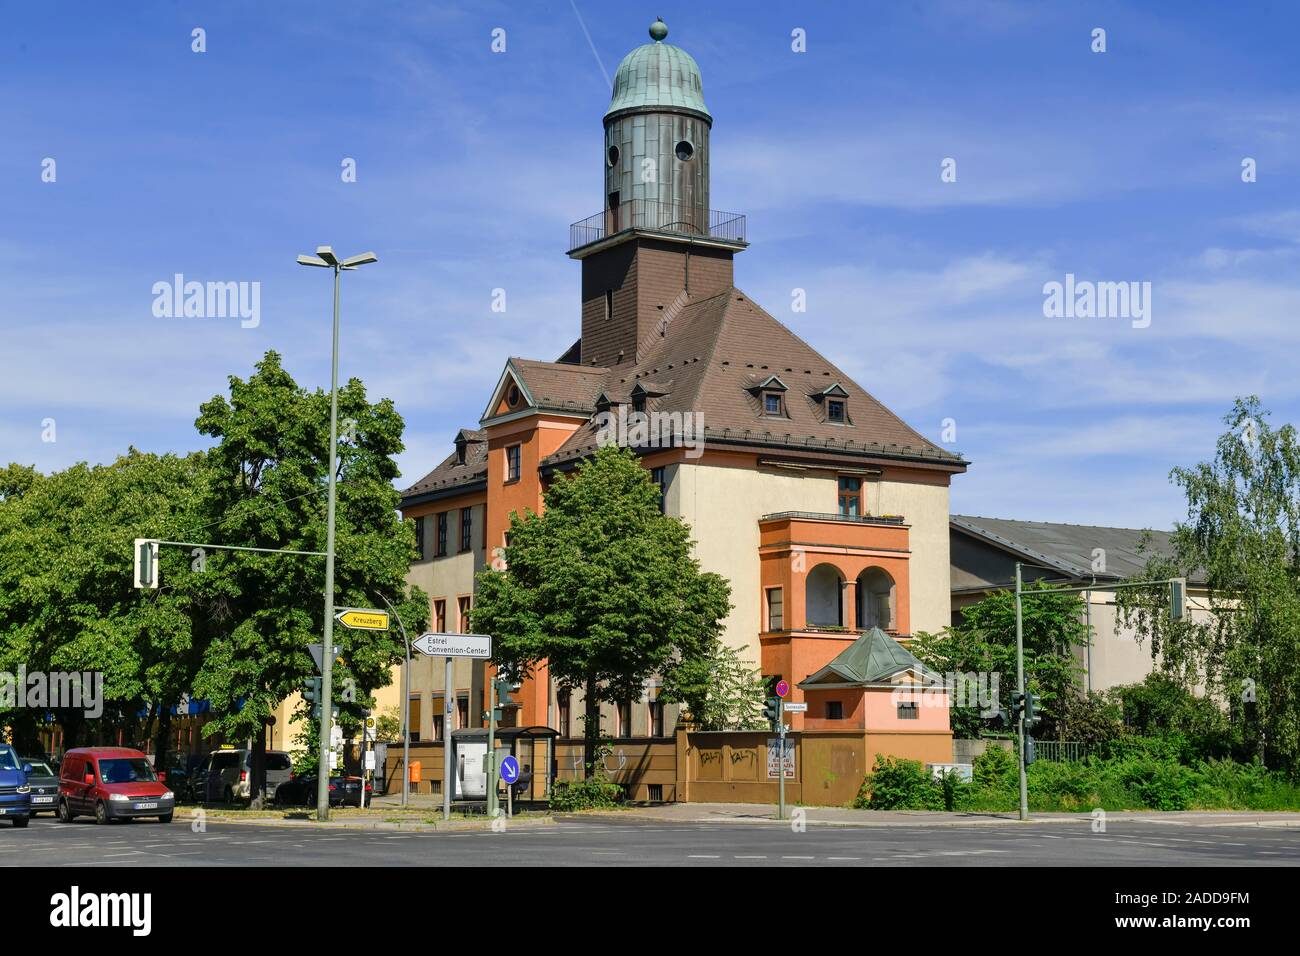 Mehrfamilienhaus mit Kupferturm, Dammweg, Sonnenallee, Neukölln, Berlin, Deutschland Stock Photo